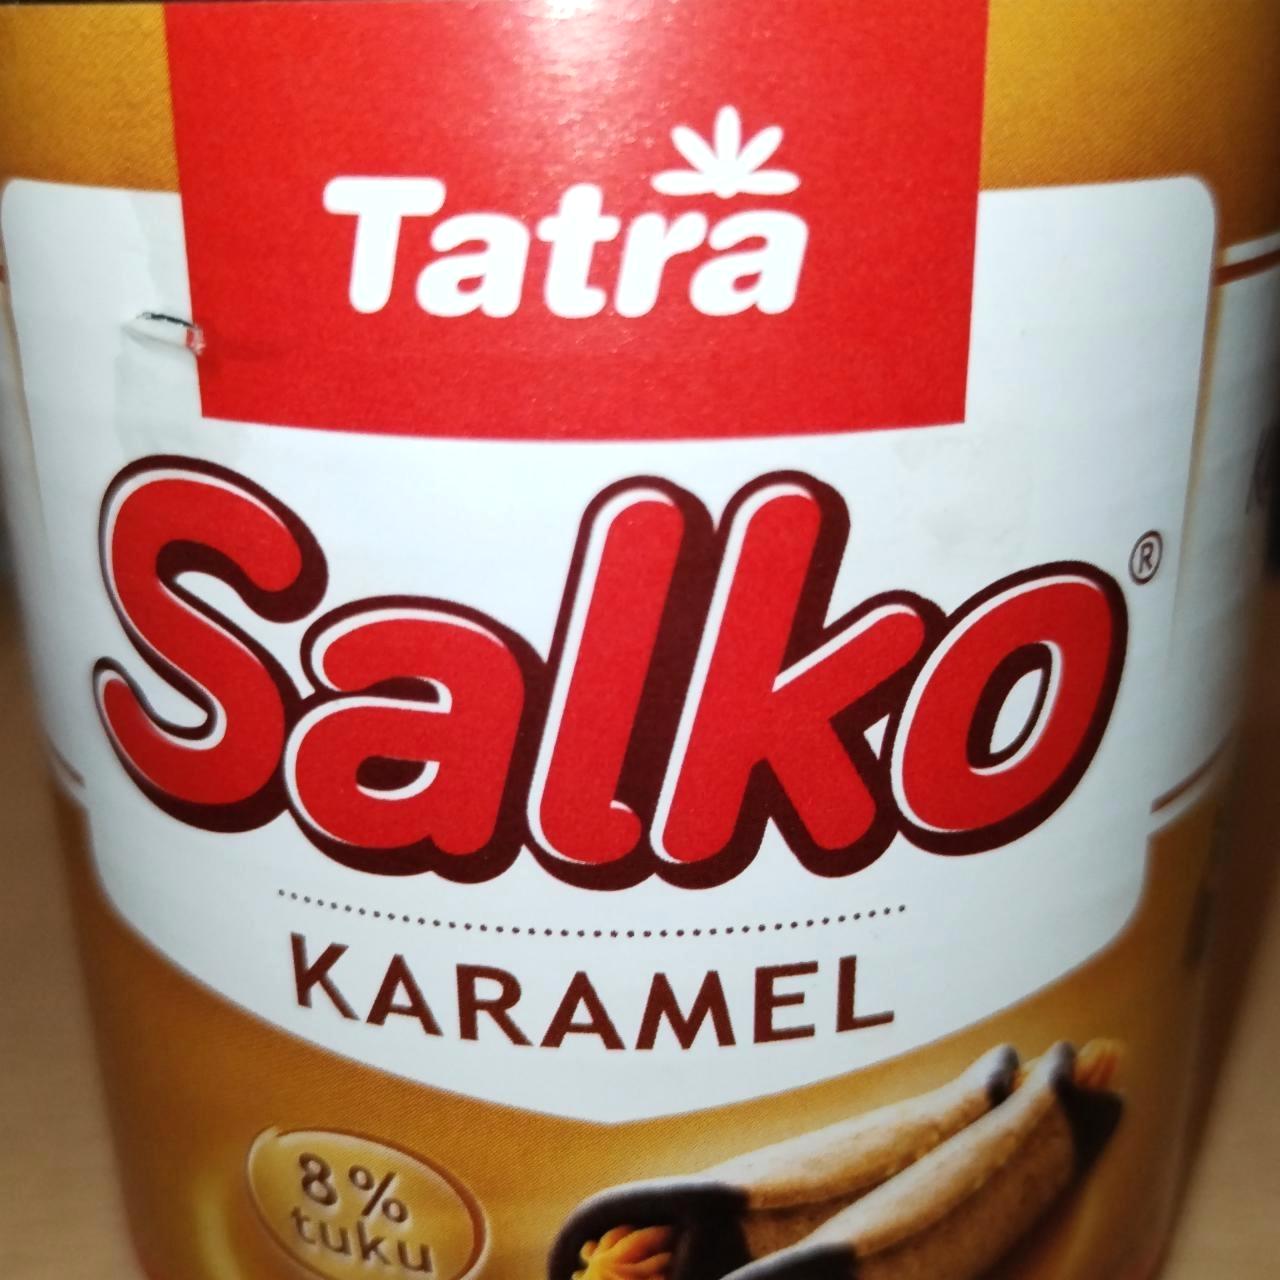 Képek - Salko karamel Tatra